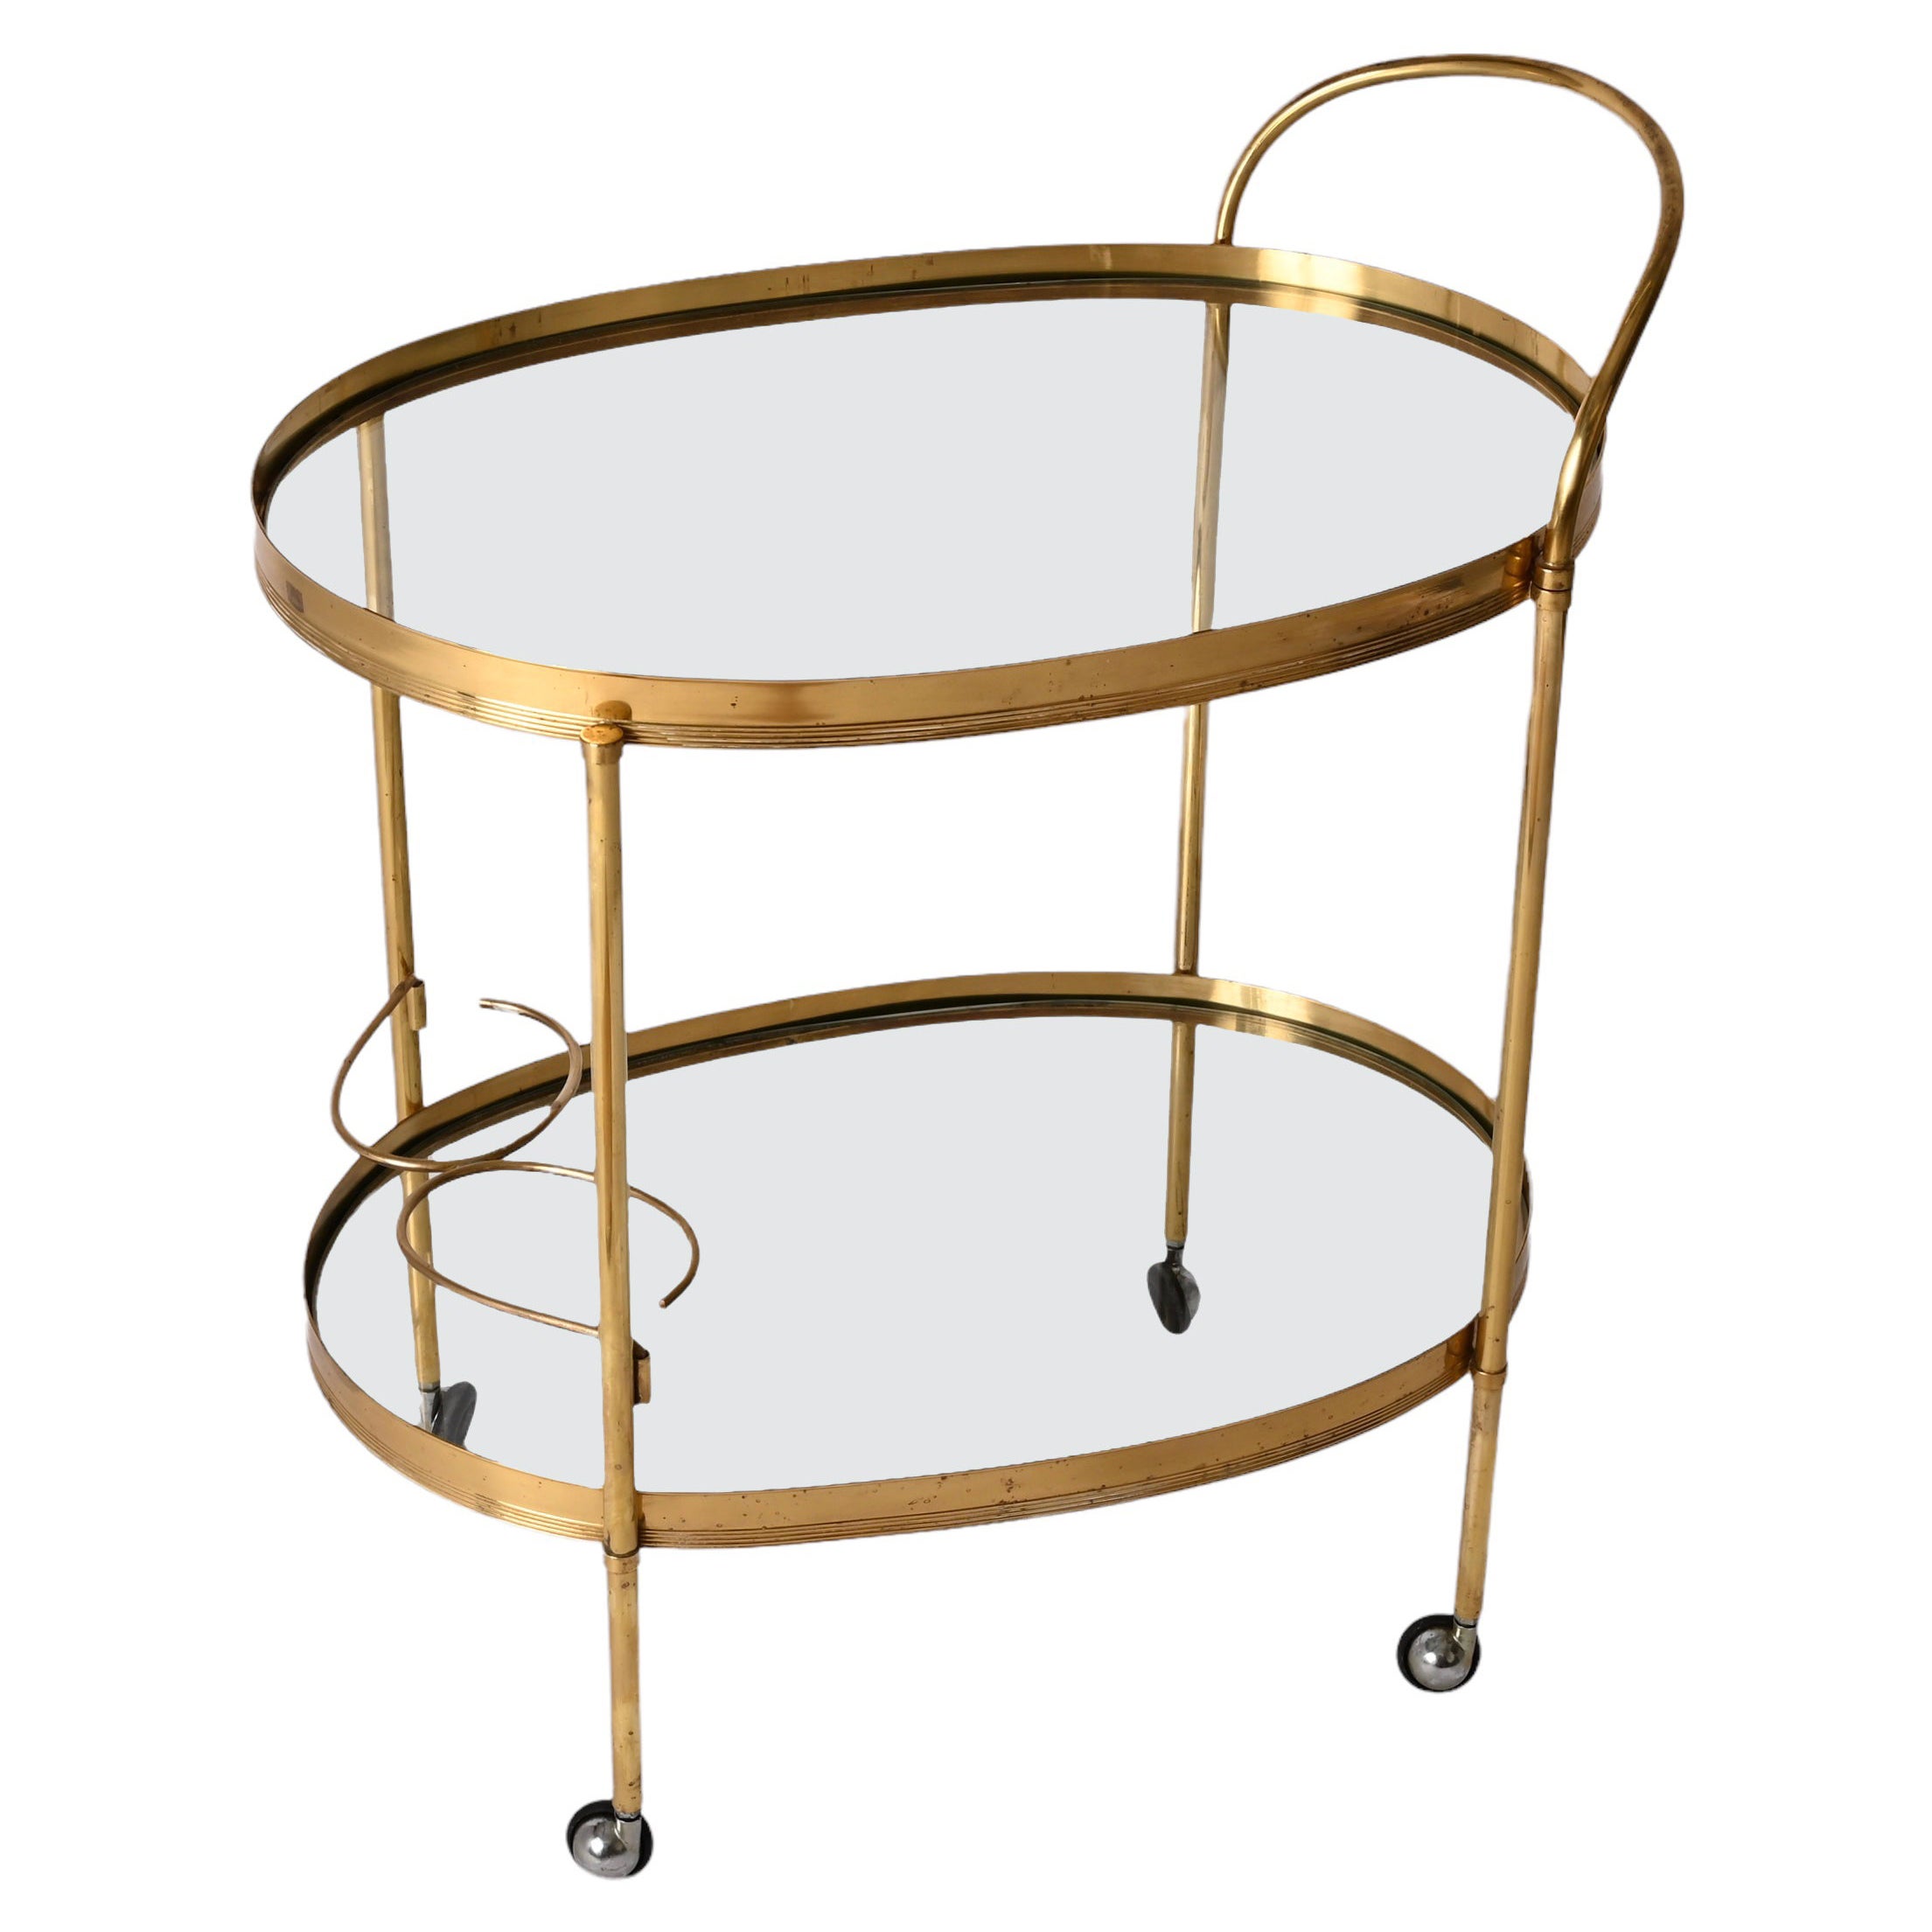 Maison Jansen Mid-Century Brass and Glass Italian Oval Bar Cart, 1970s